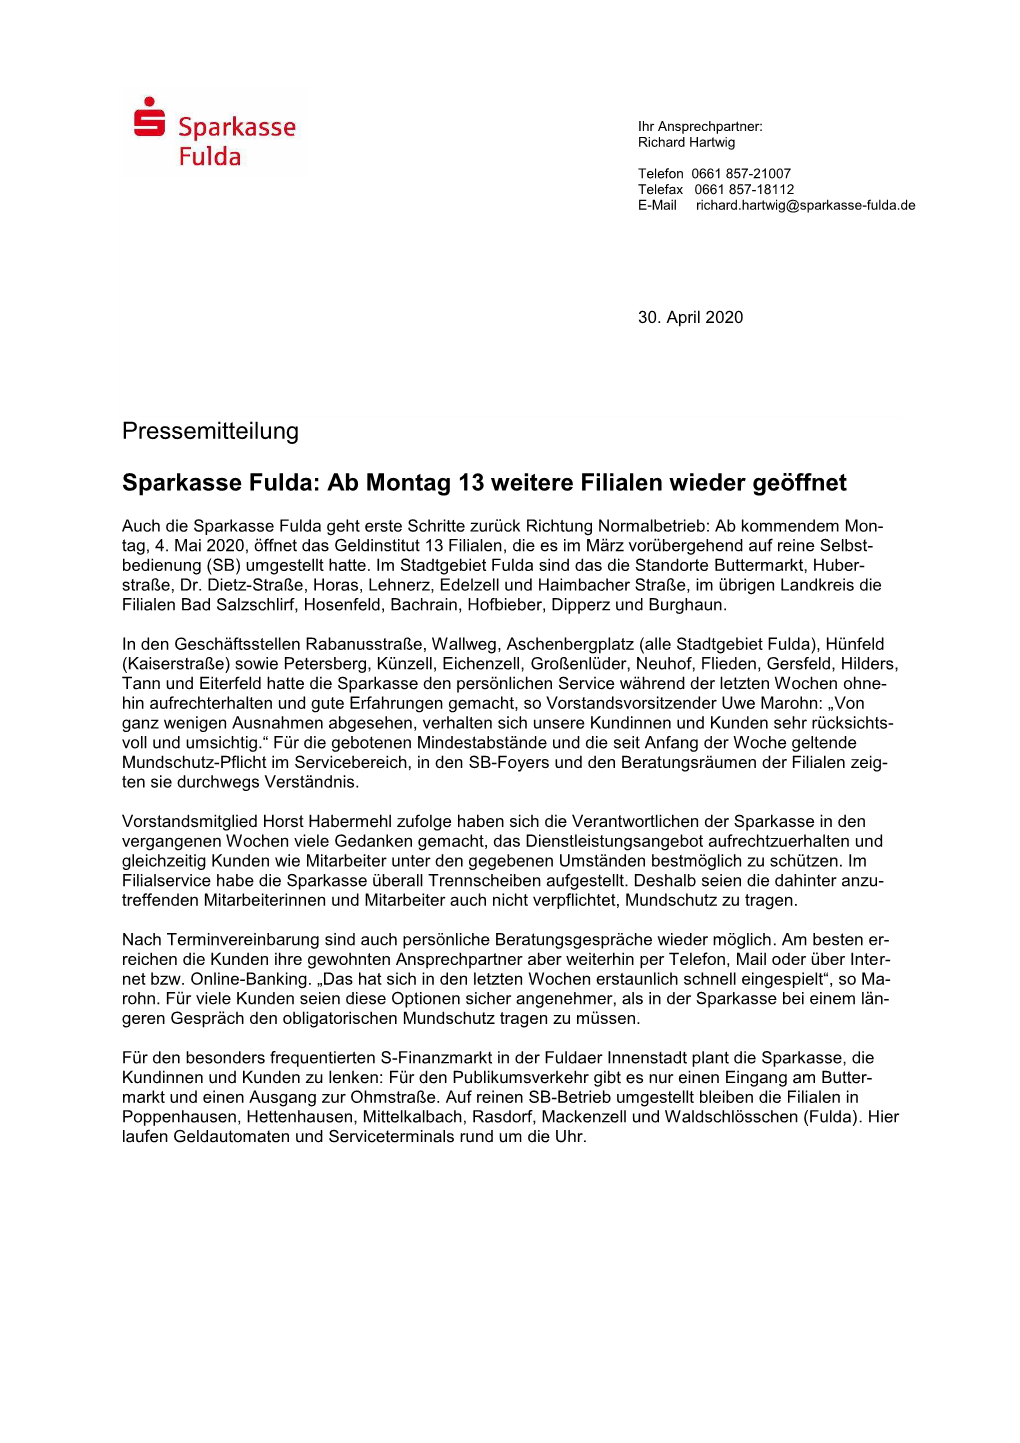 Pressemitteilung Sparkasse Fulda: Ab Montag 13 Weitere Filialen Wieder